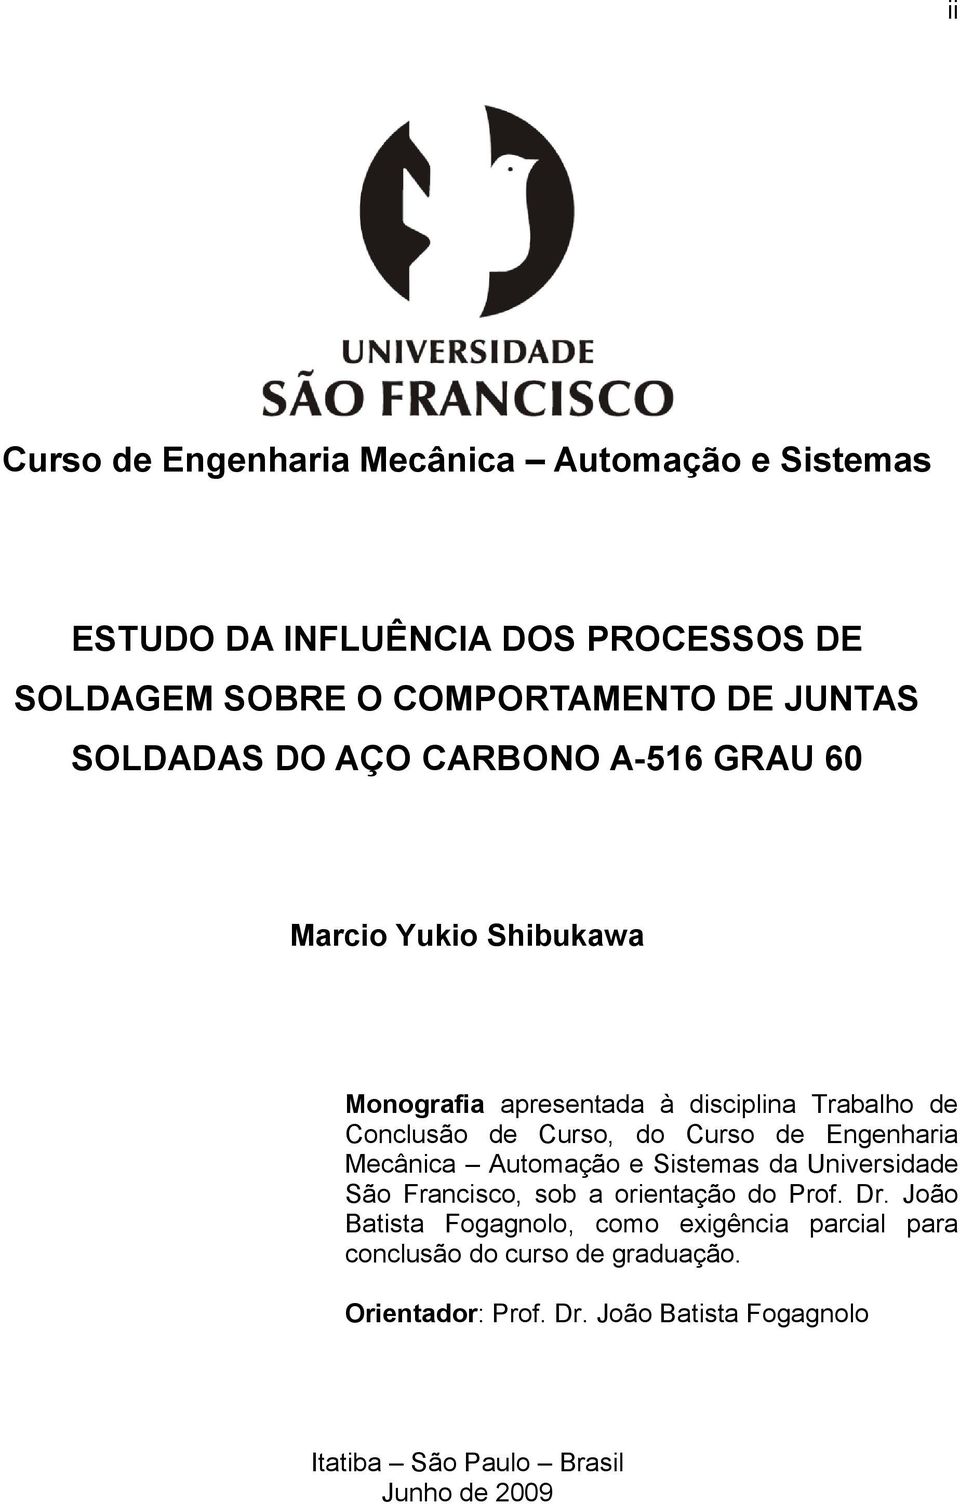 Curso de Engenharia Mecânica Automação e Sistemas da Universidade São Francisco, sob a orientação do Prof. Dr.